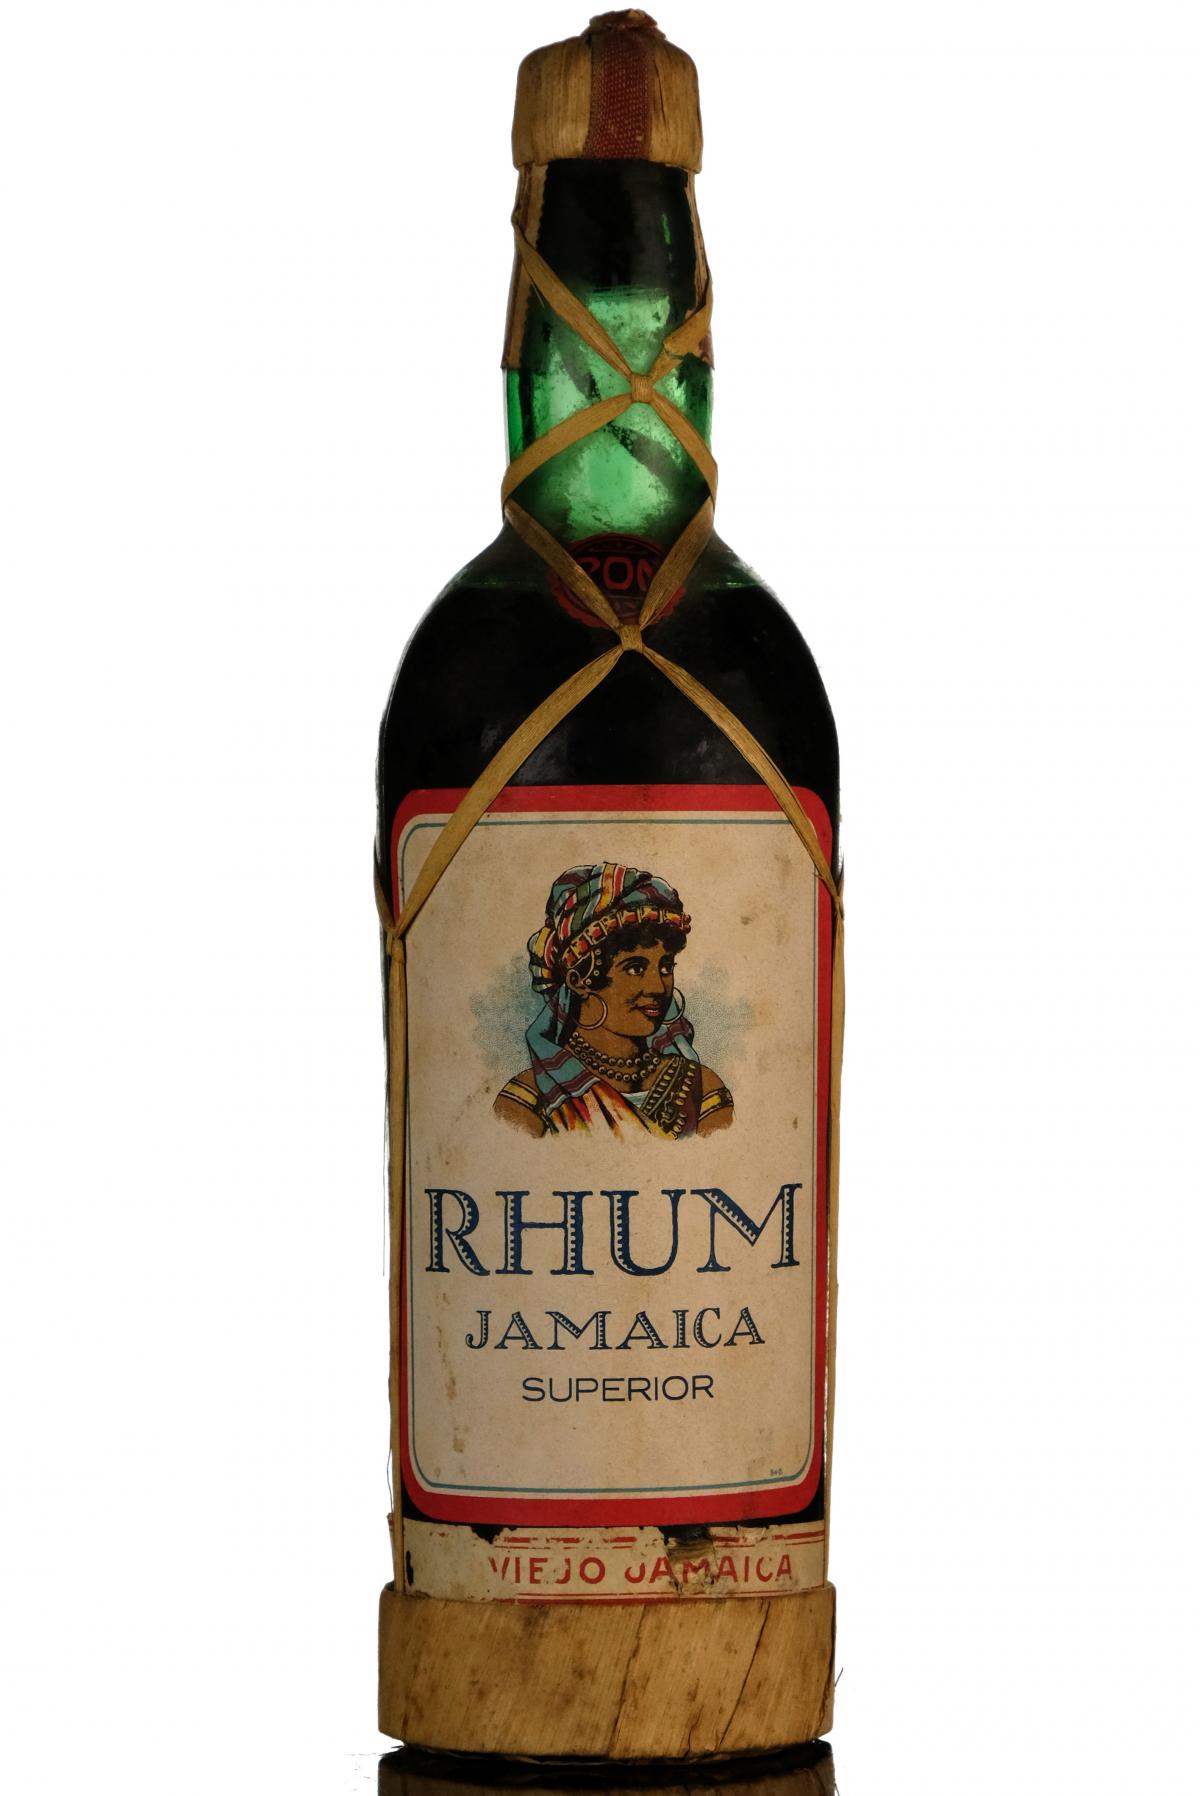 Jamaica Superior Rhum